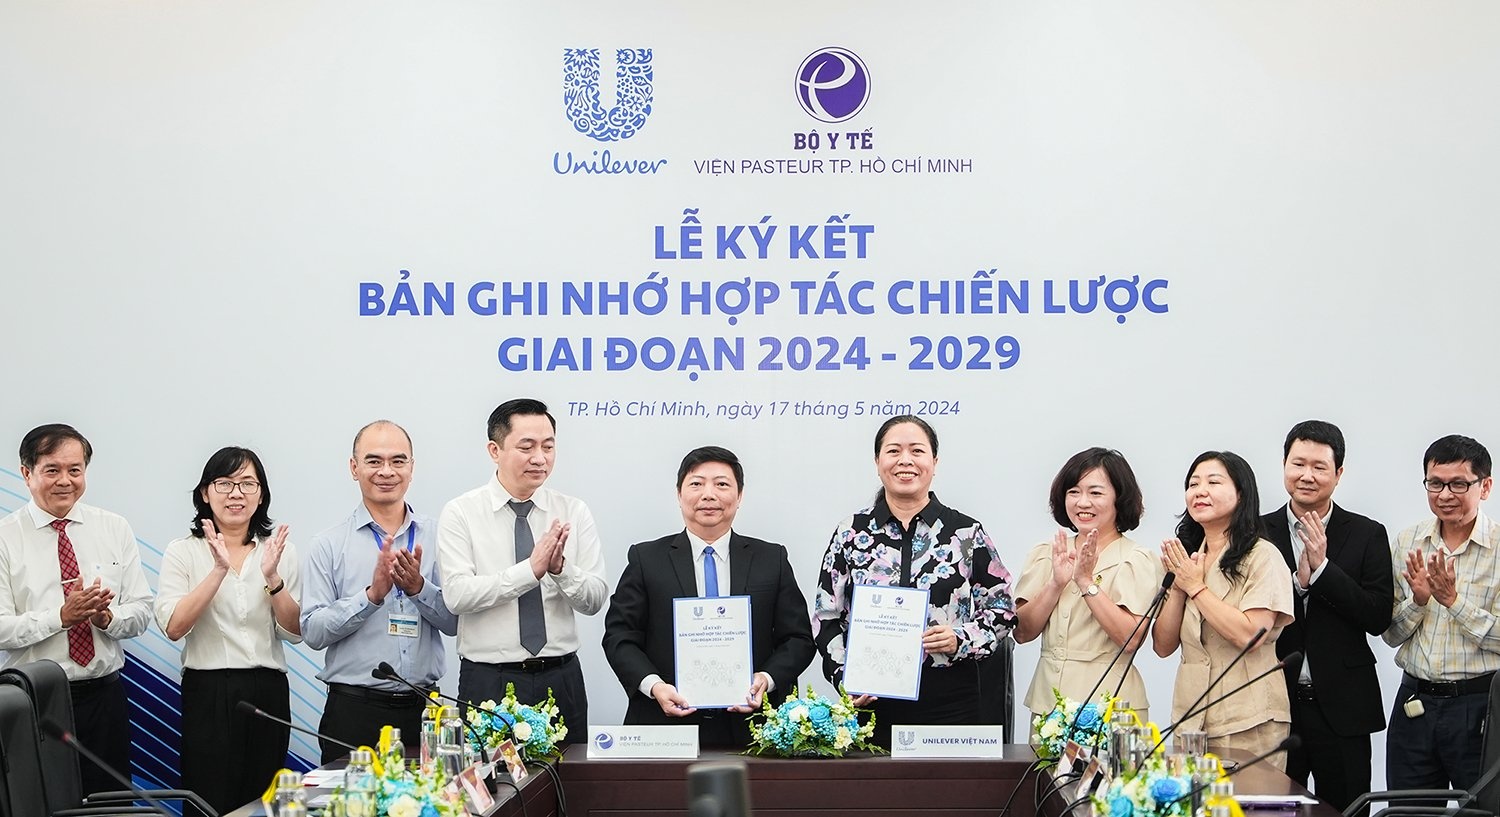 Unilever Việt Nam đồng hành nâng cao sức khỏe cho người Việt